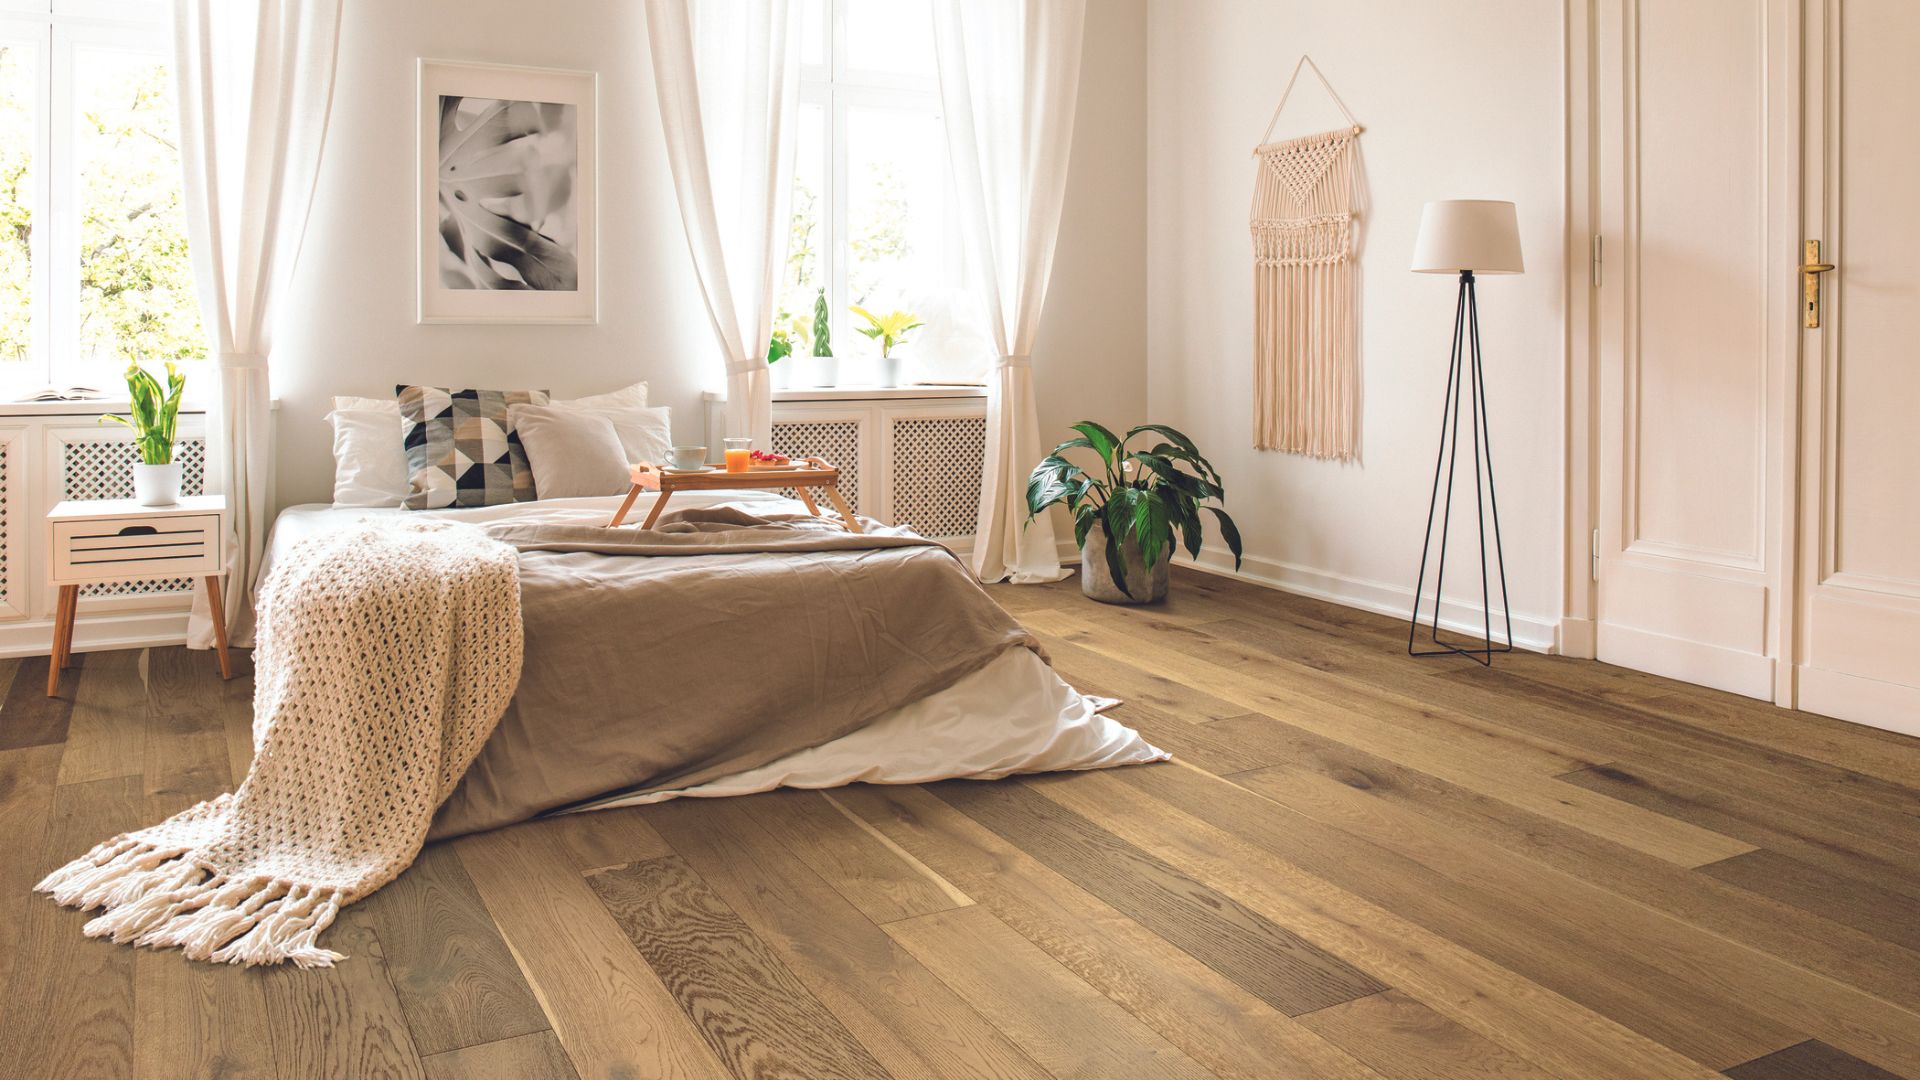 Hardwood flooring in a bedroom.